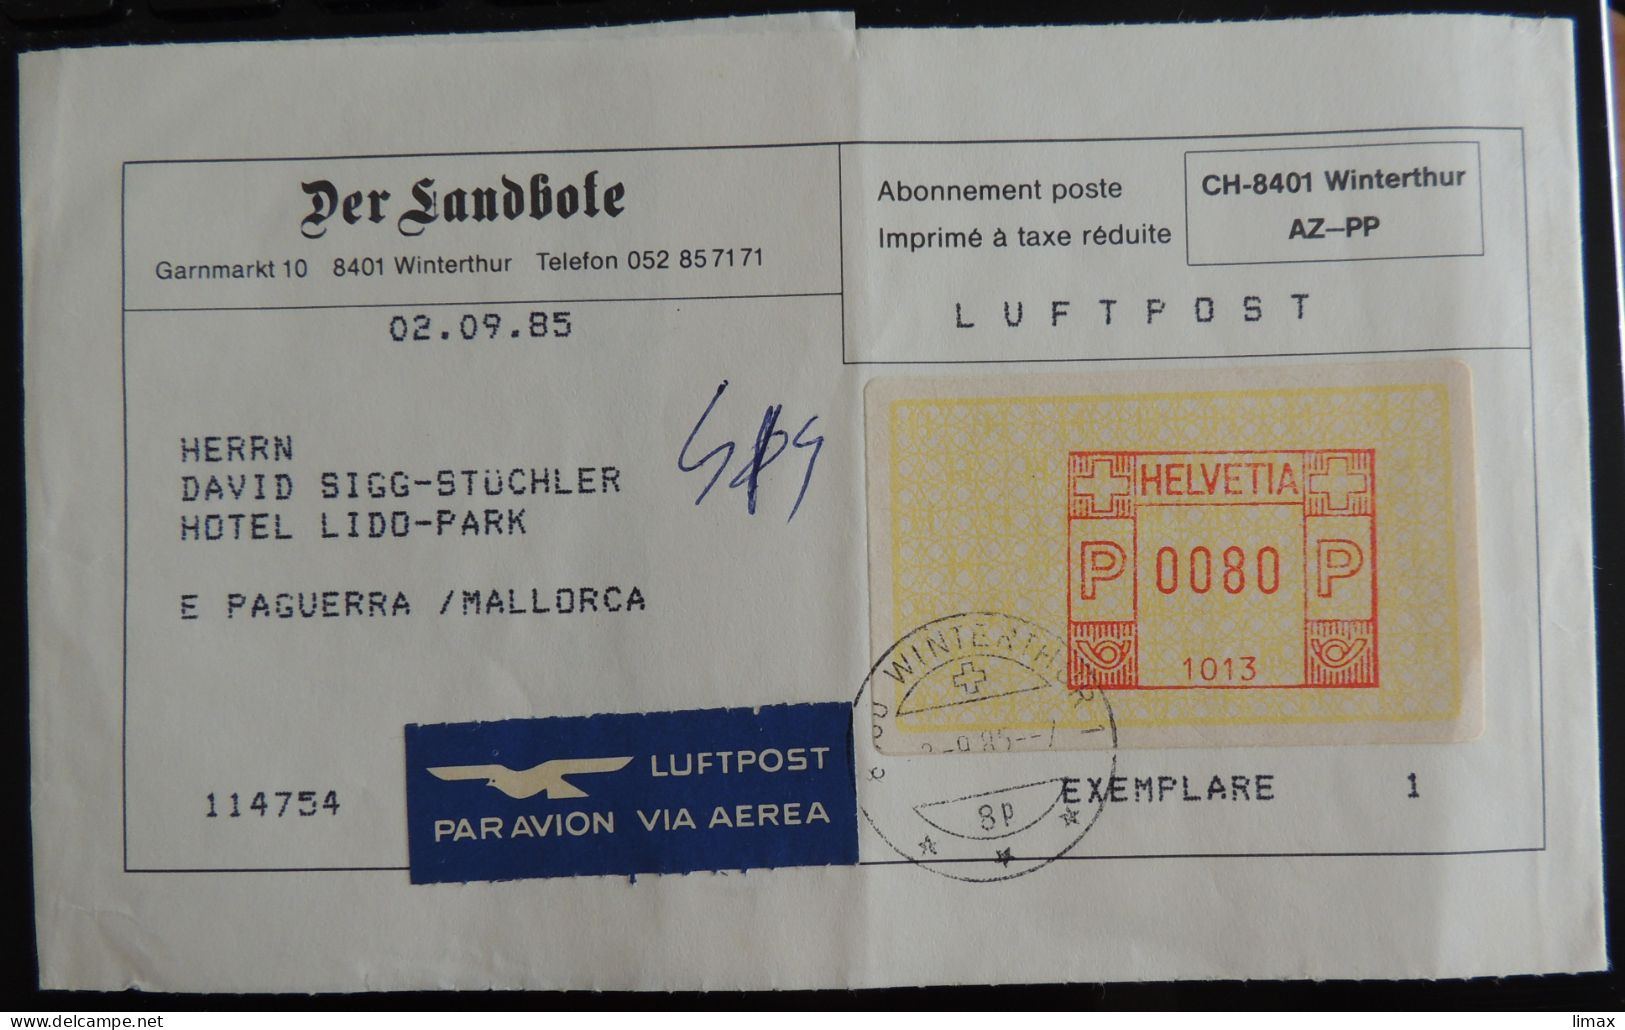 Der Landbote 8401 Winterthur 1985 > Paguerra [sic!] Mallorca - Luftpost - Postage Meters